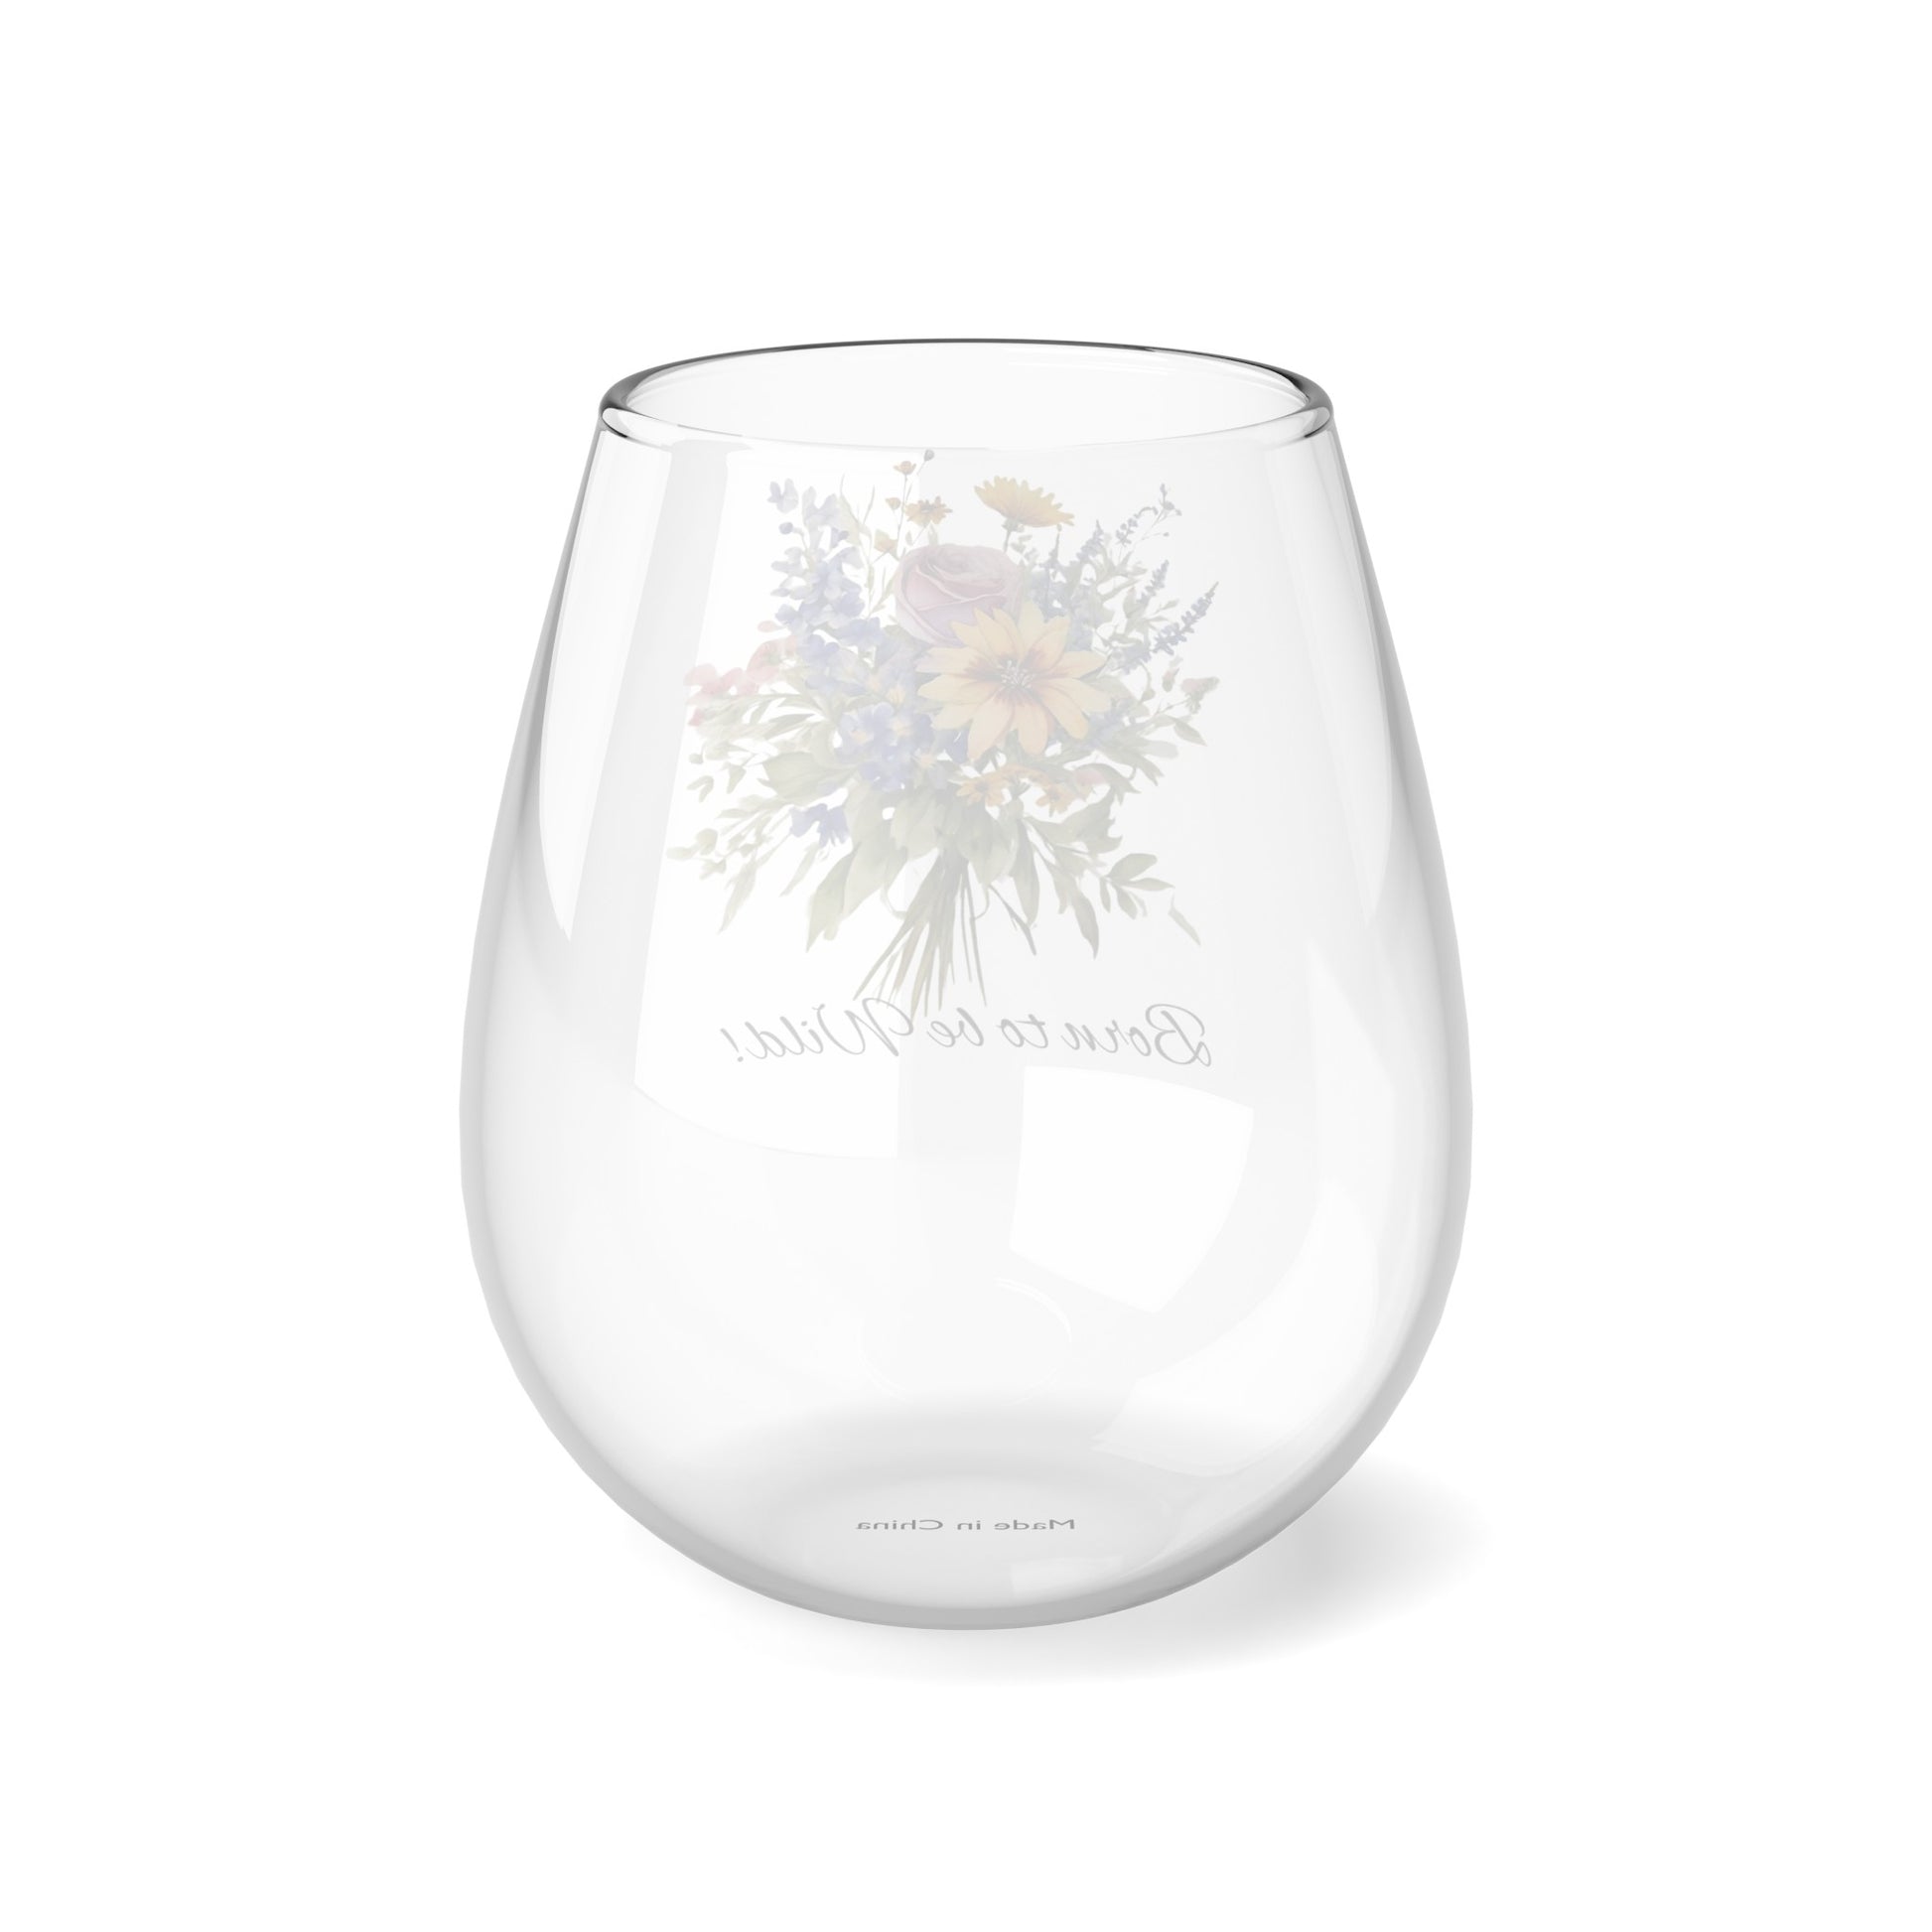 Born to be Wild wine glass, Wildflowers Stemless Wine Glass, 11.75oz - The Witchy Gypsy